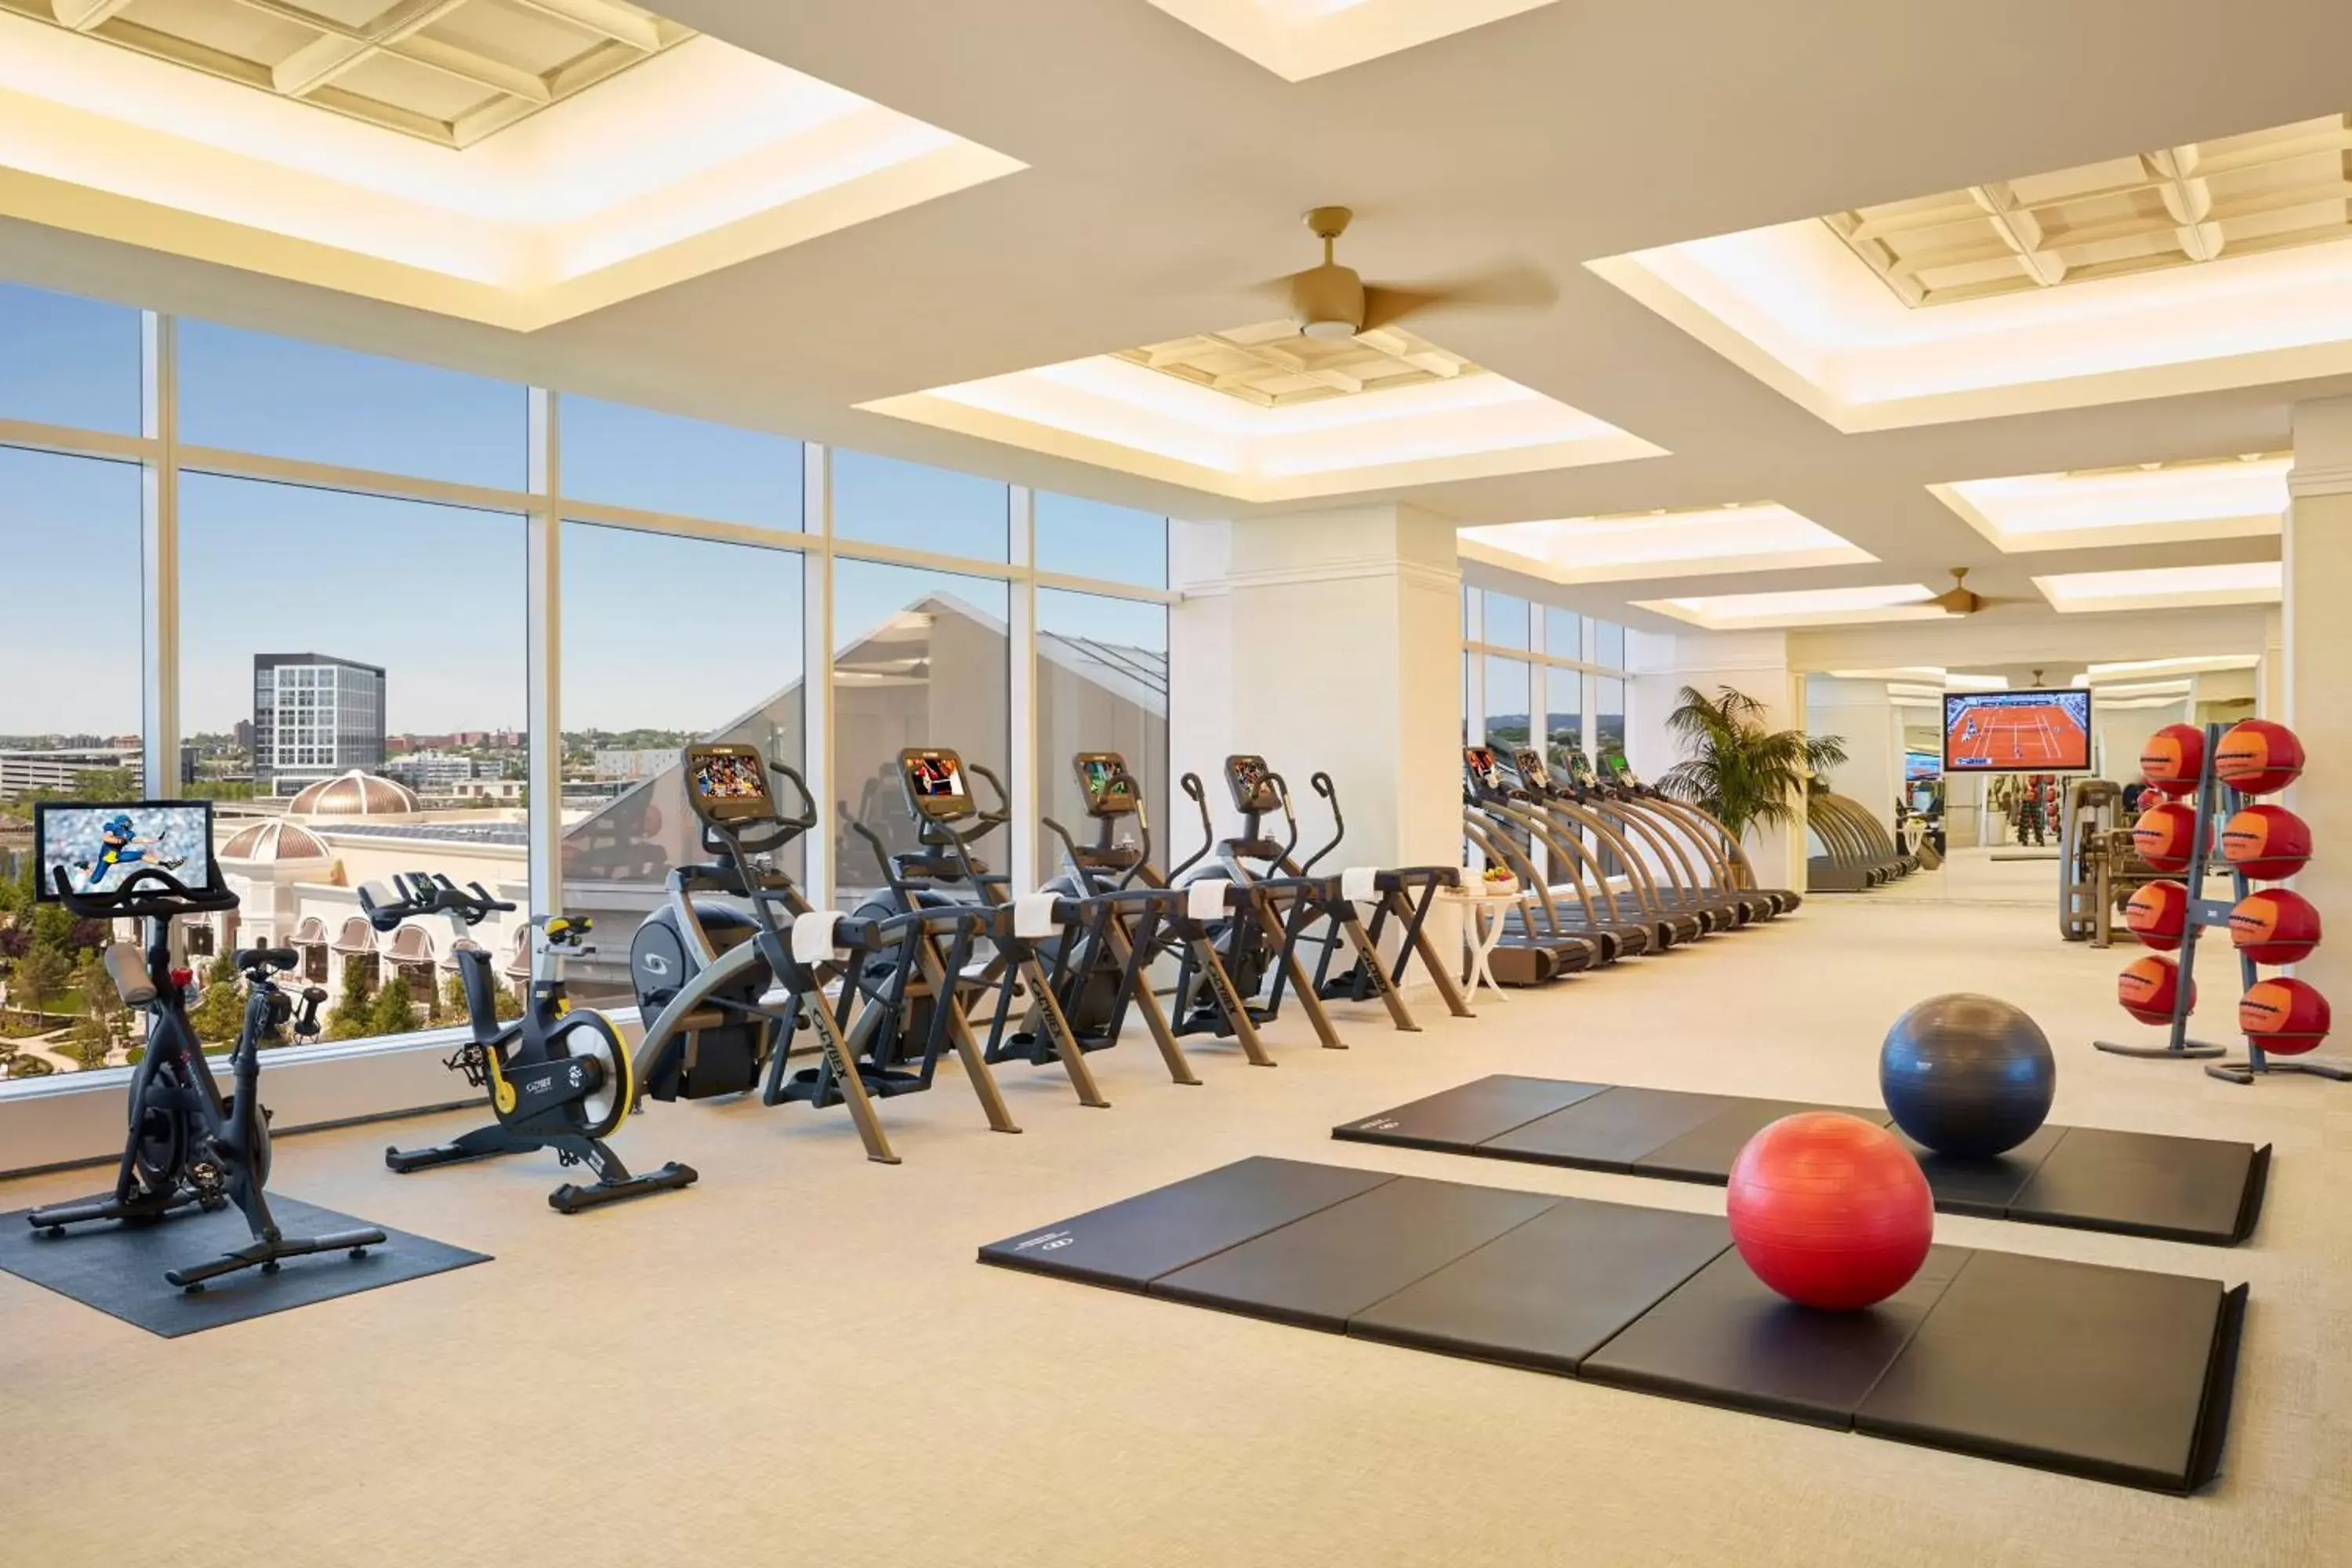 Fitness centre/facilities, Fitness Center/Facilities in Encore Boston Harbor